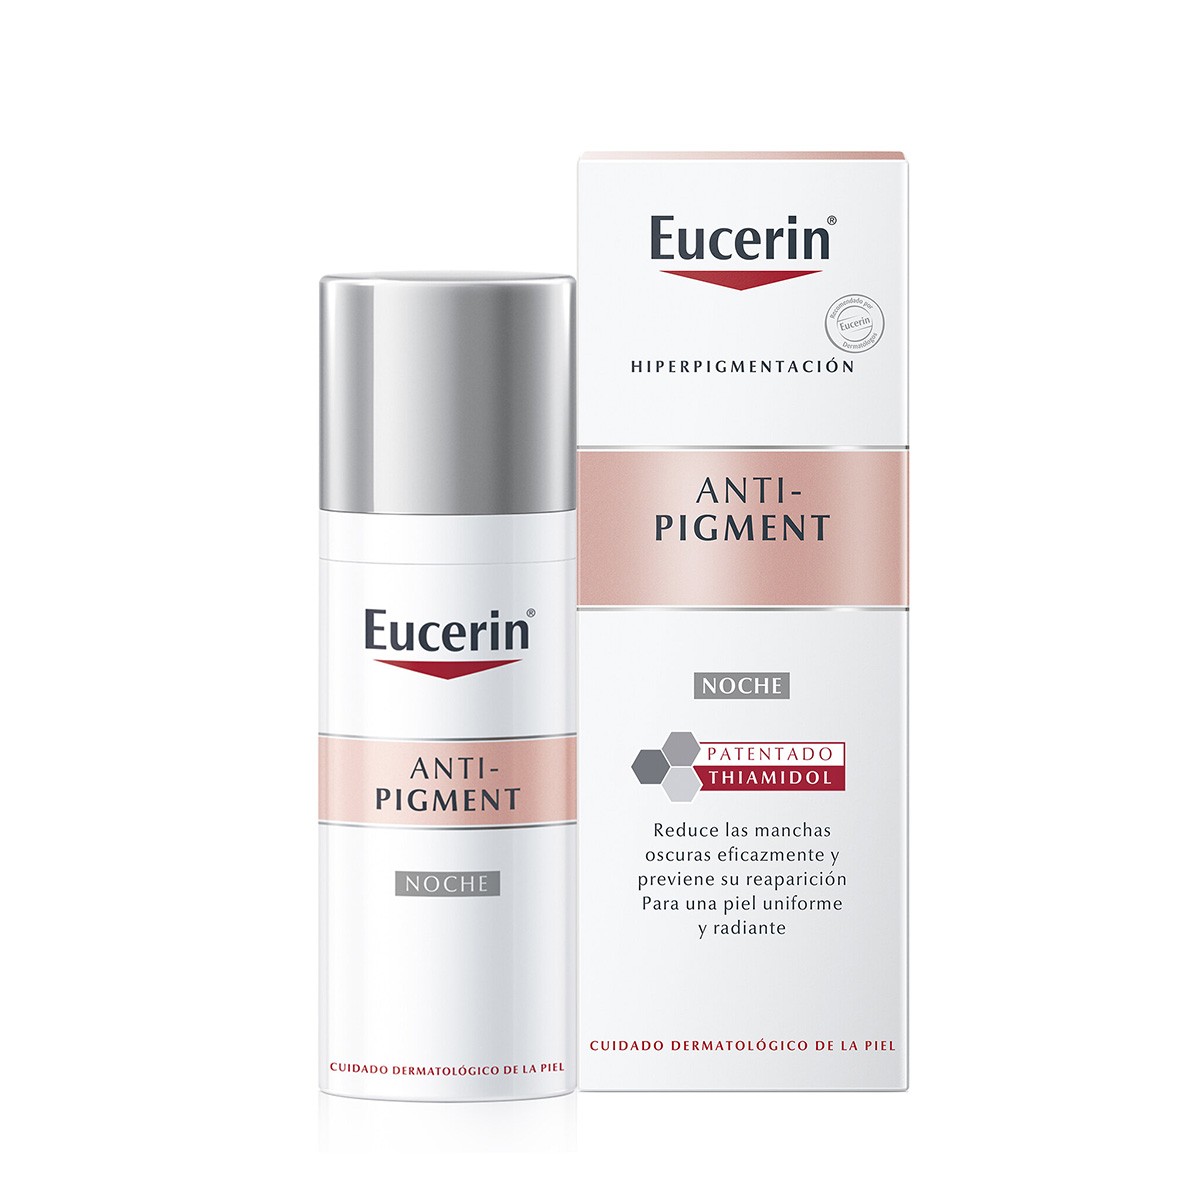 Eucerin anti-pigment noche 50 ml